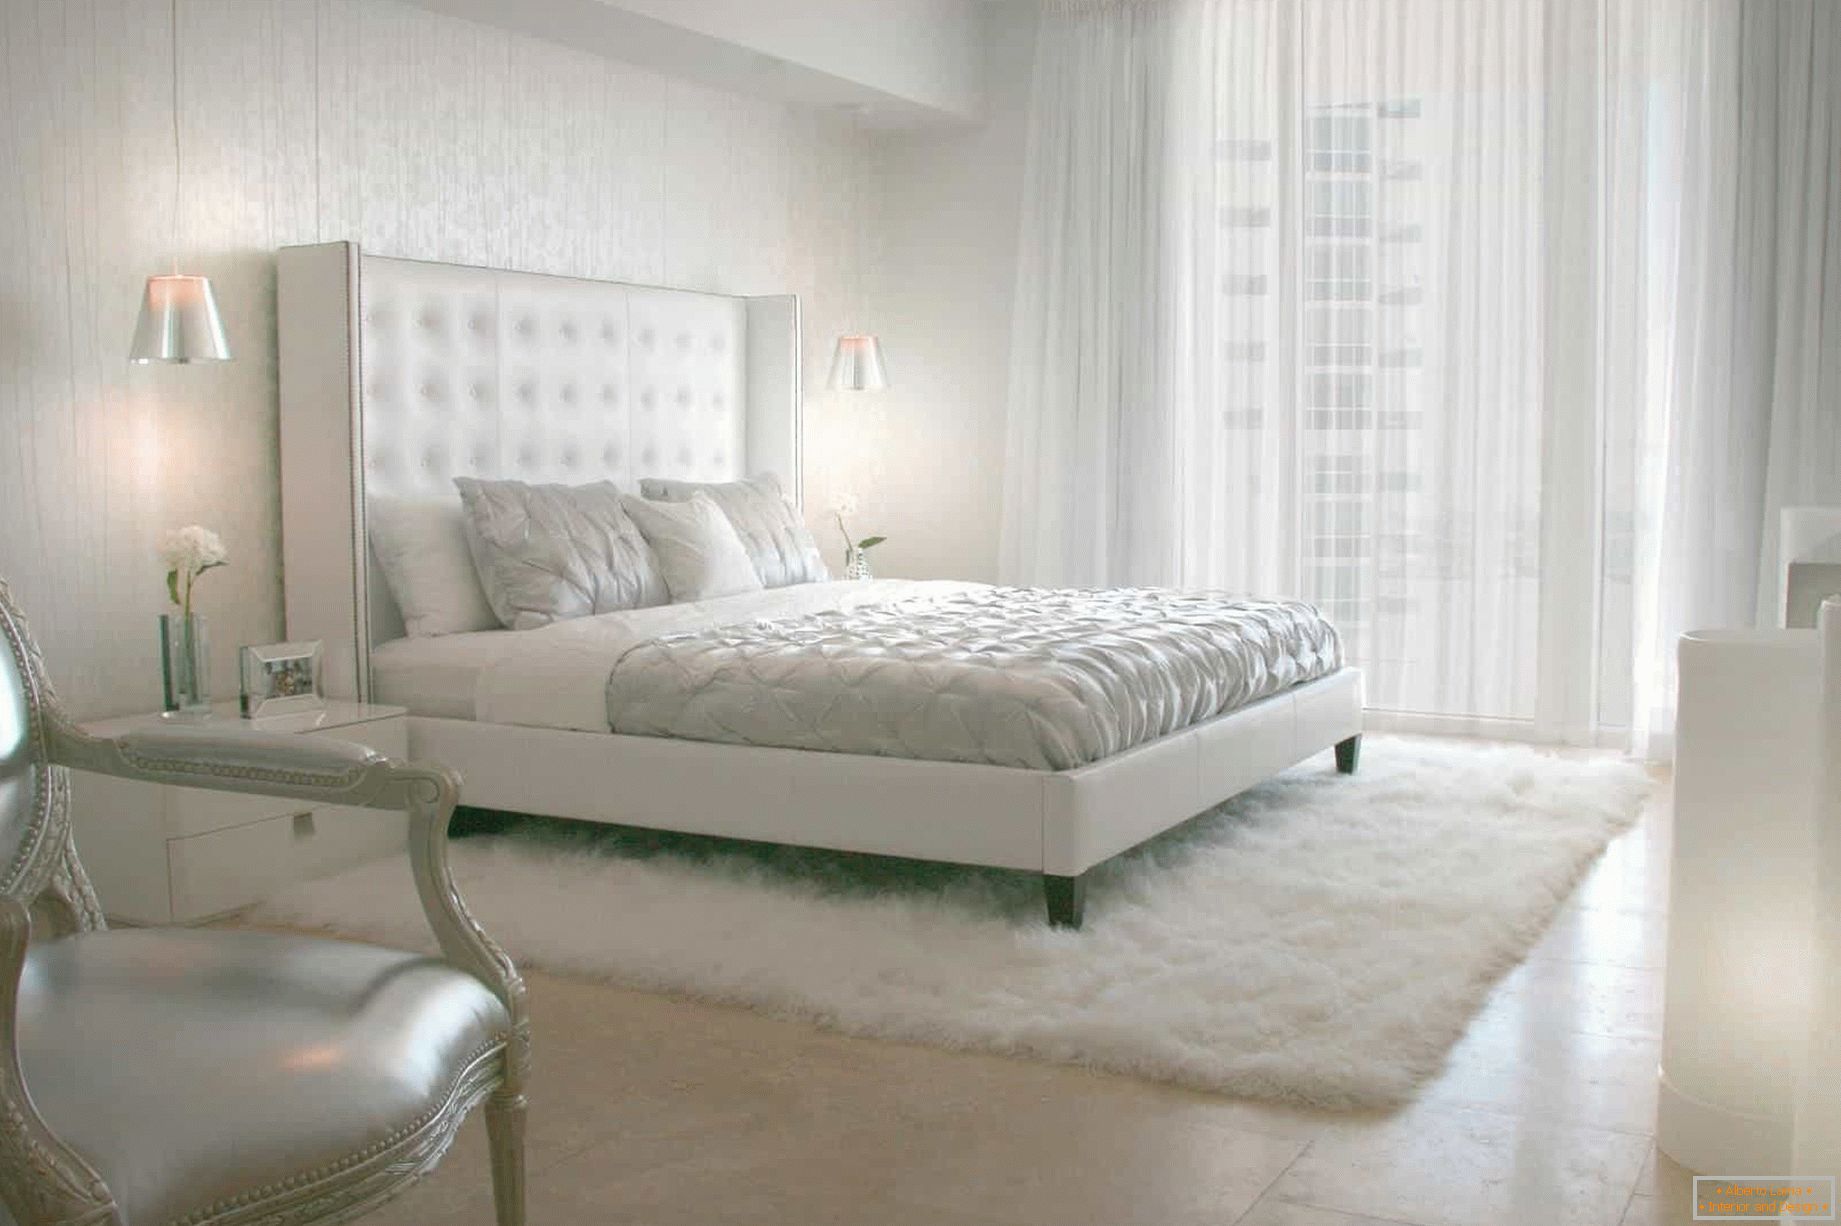 Móveis и фурнитура в одном стиле для классической спальни